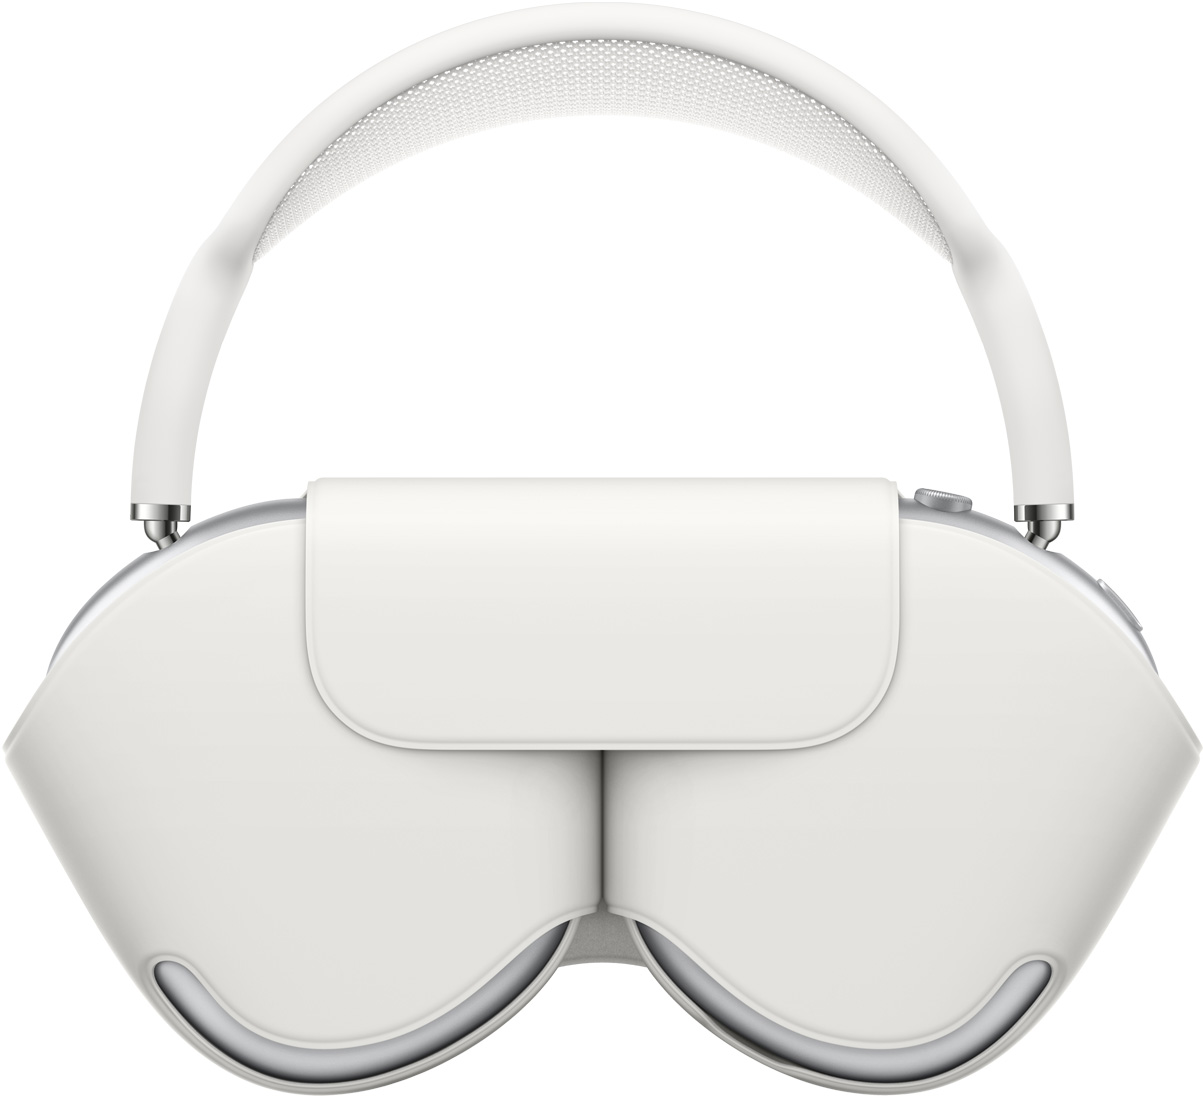 Gümüş Rengi AirPods Max ve kulaklık kapaklarını koruyan ve kapatıldığında taç kısmı yukarıda kalan uyumlu renkte bir beyaz Smart Case.